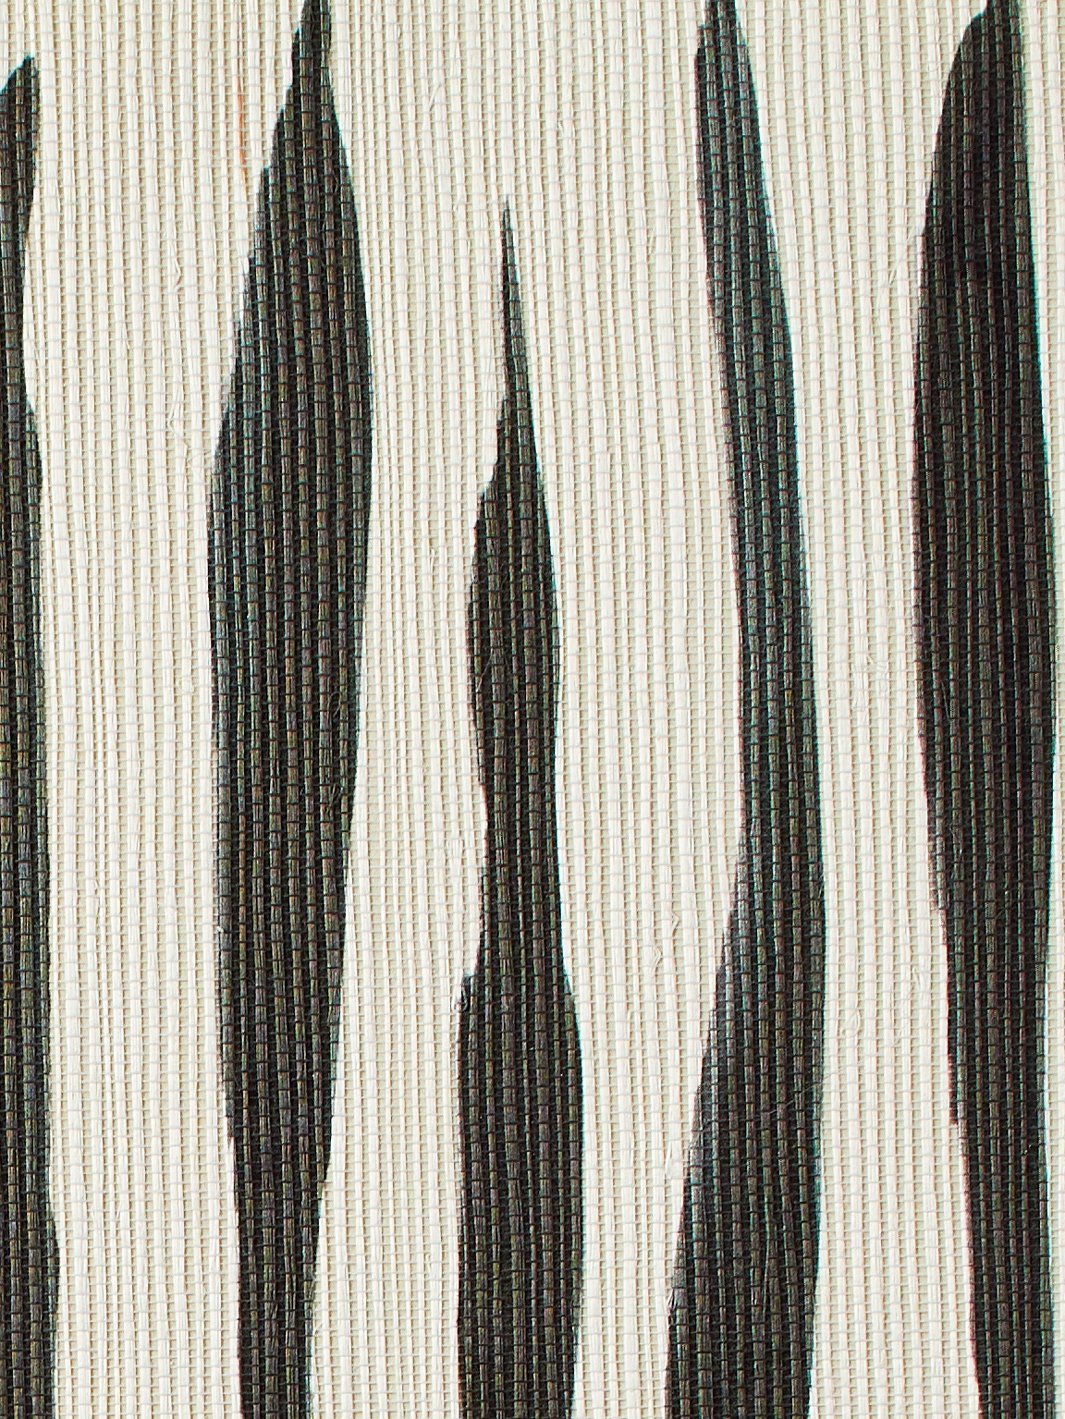 'Watercolor Weave Small' Grasscloth' Wallpaper by Wallshoppe - Black